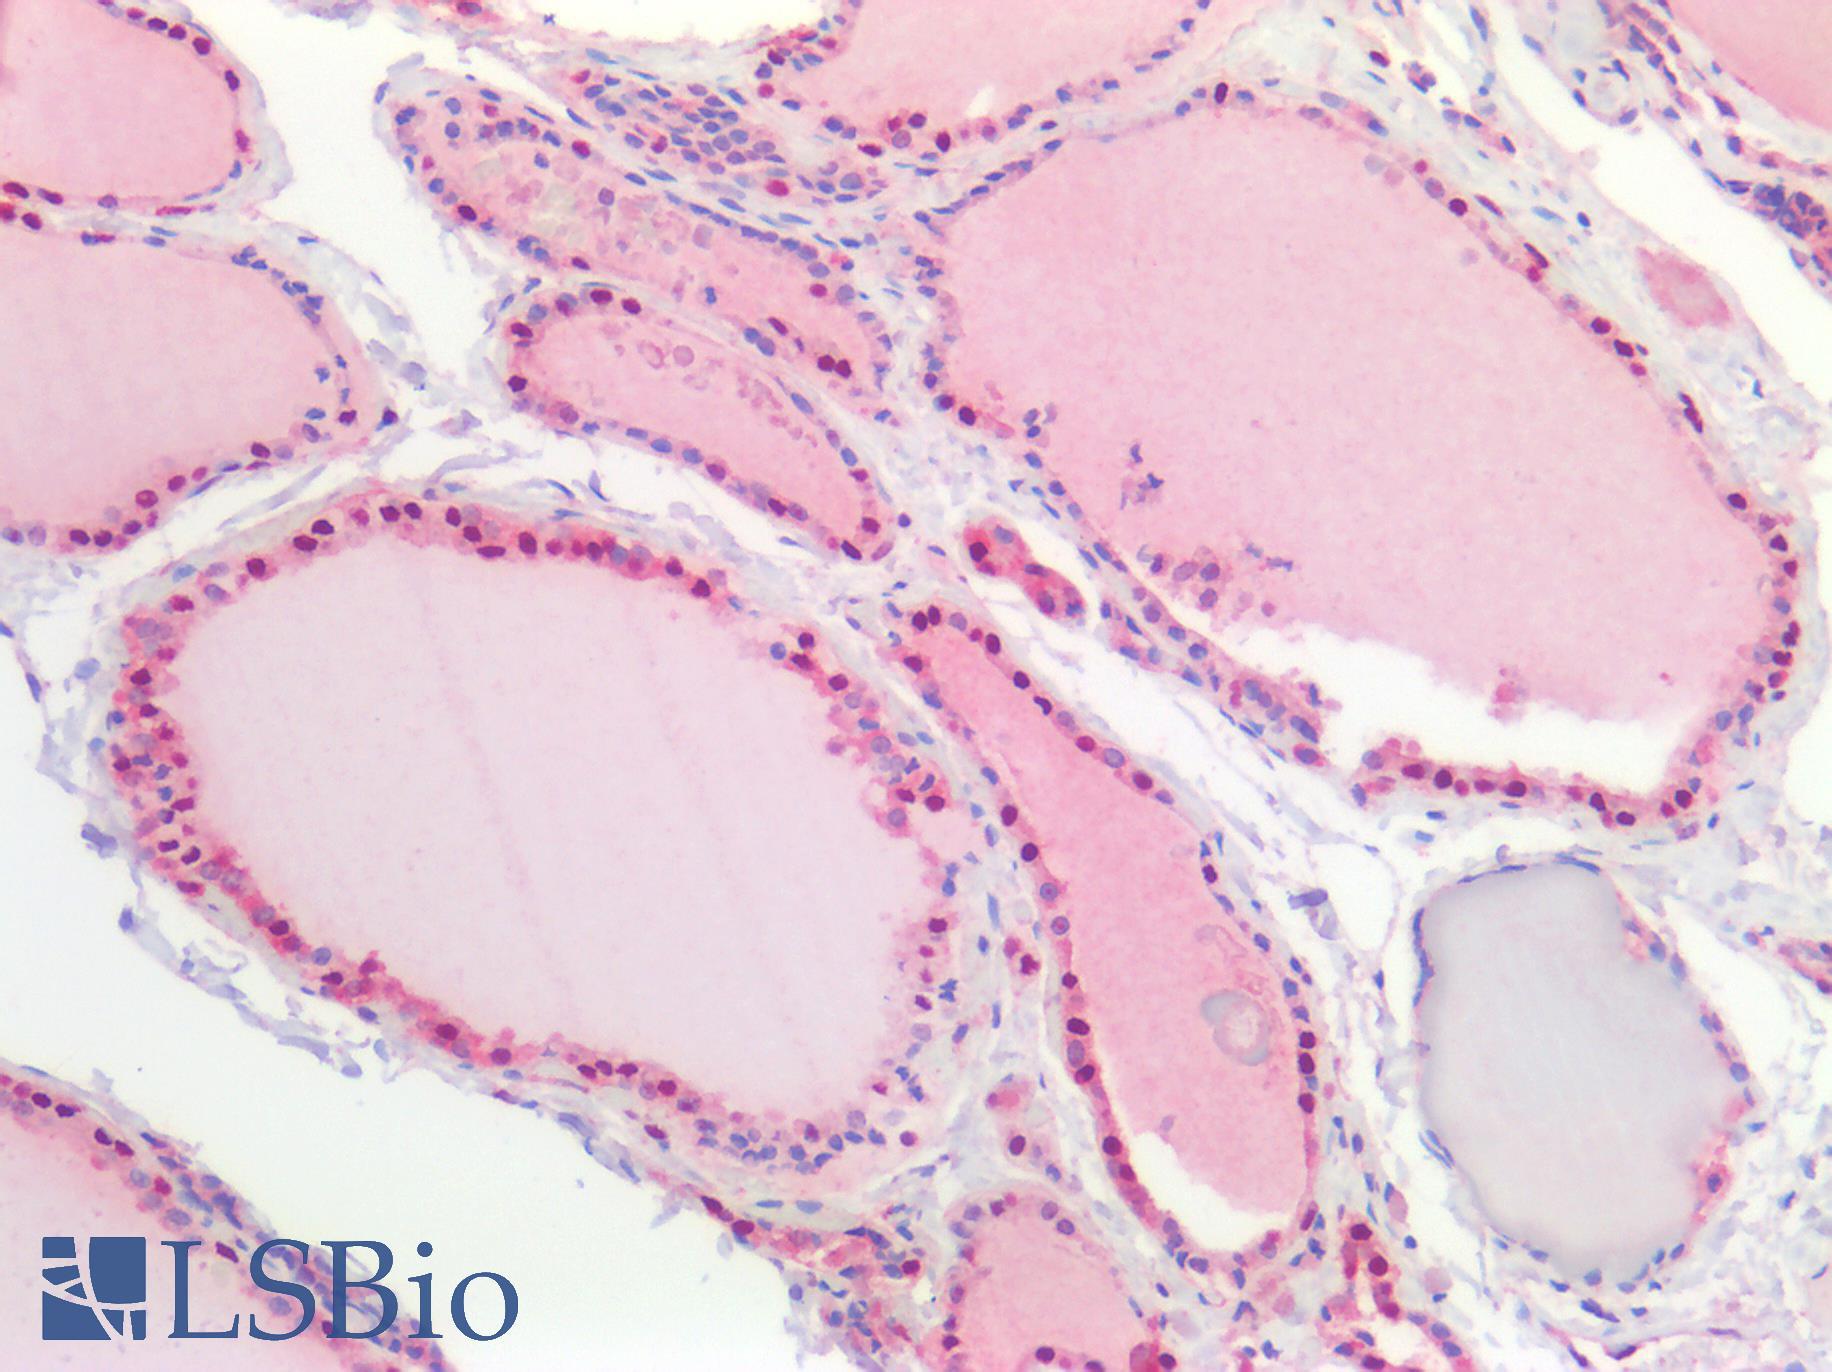 NEDD8 Antibody - Human Thyroid: Formalin-Fixed, Paraffin-Embedded (FFPE)